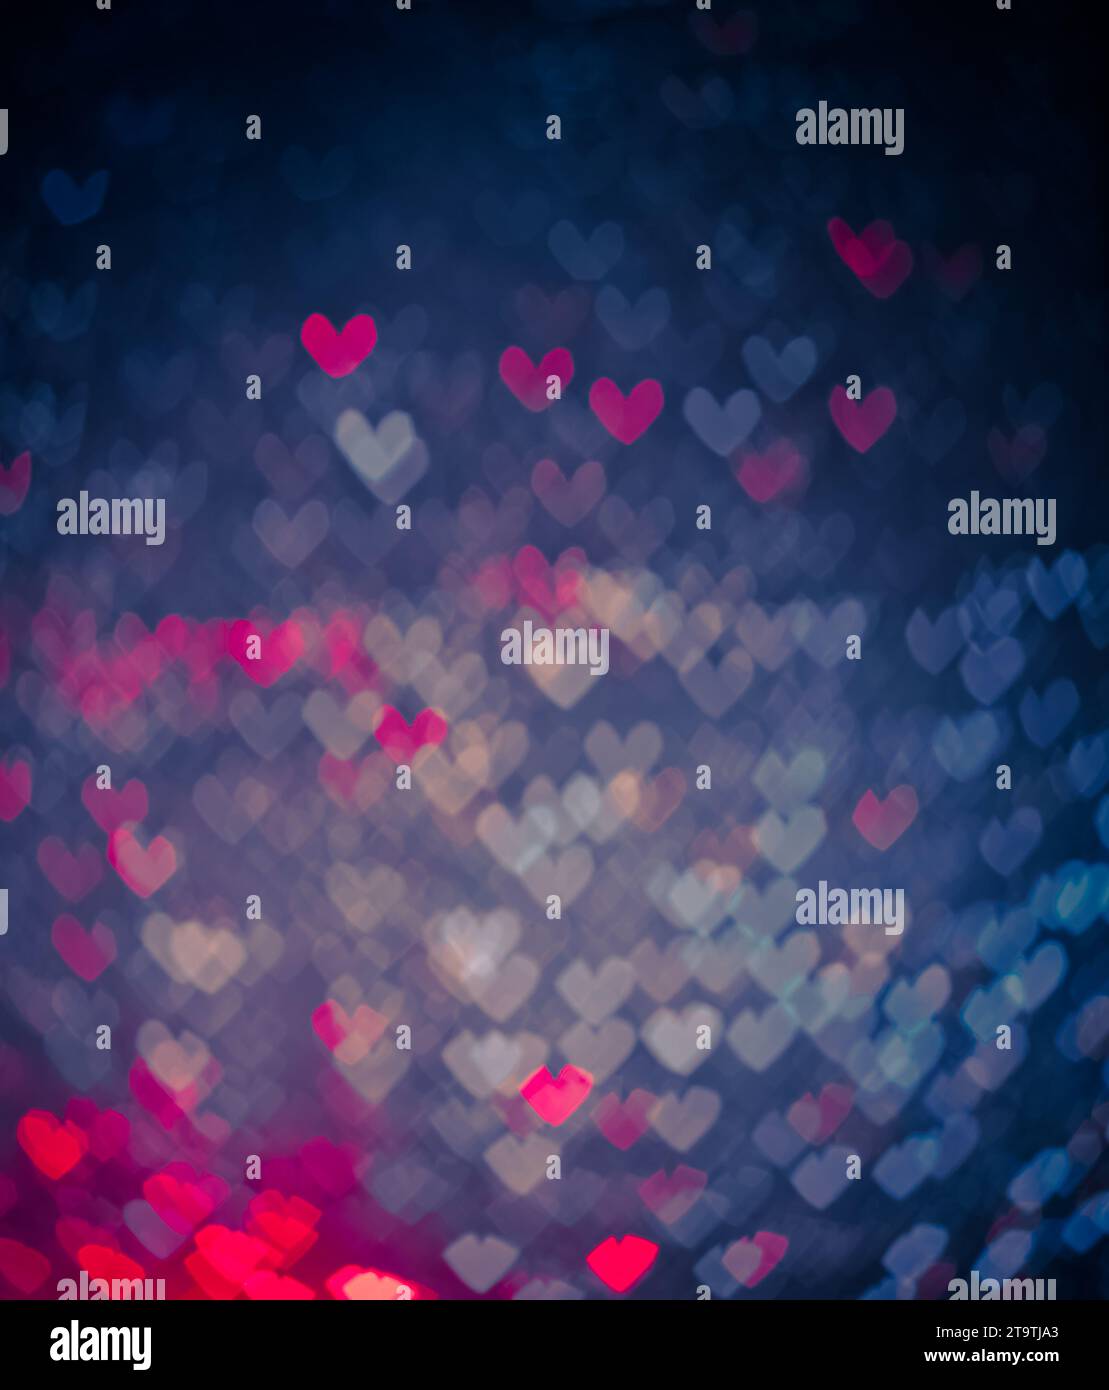 cuori blu e rosa come sfondo, san valentino e concetto d'amore Foto Stock